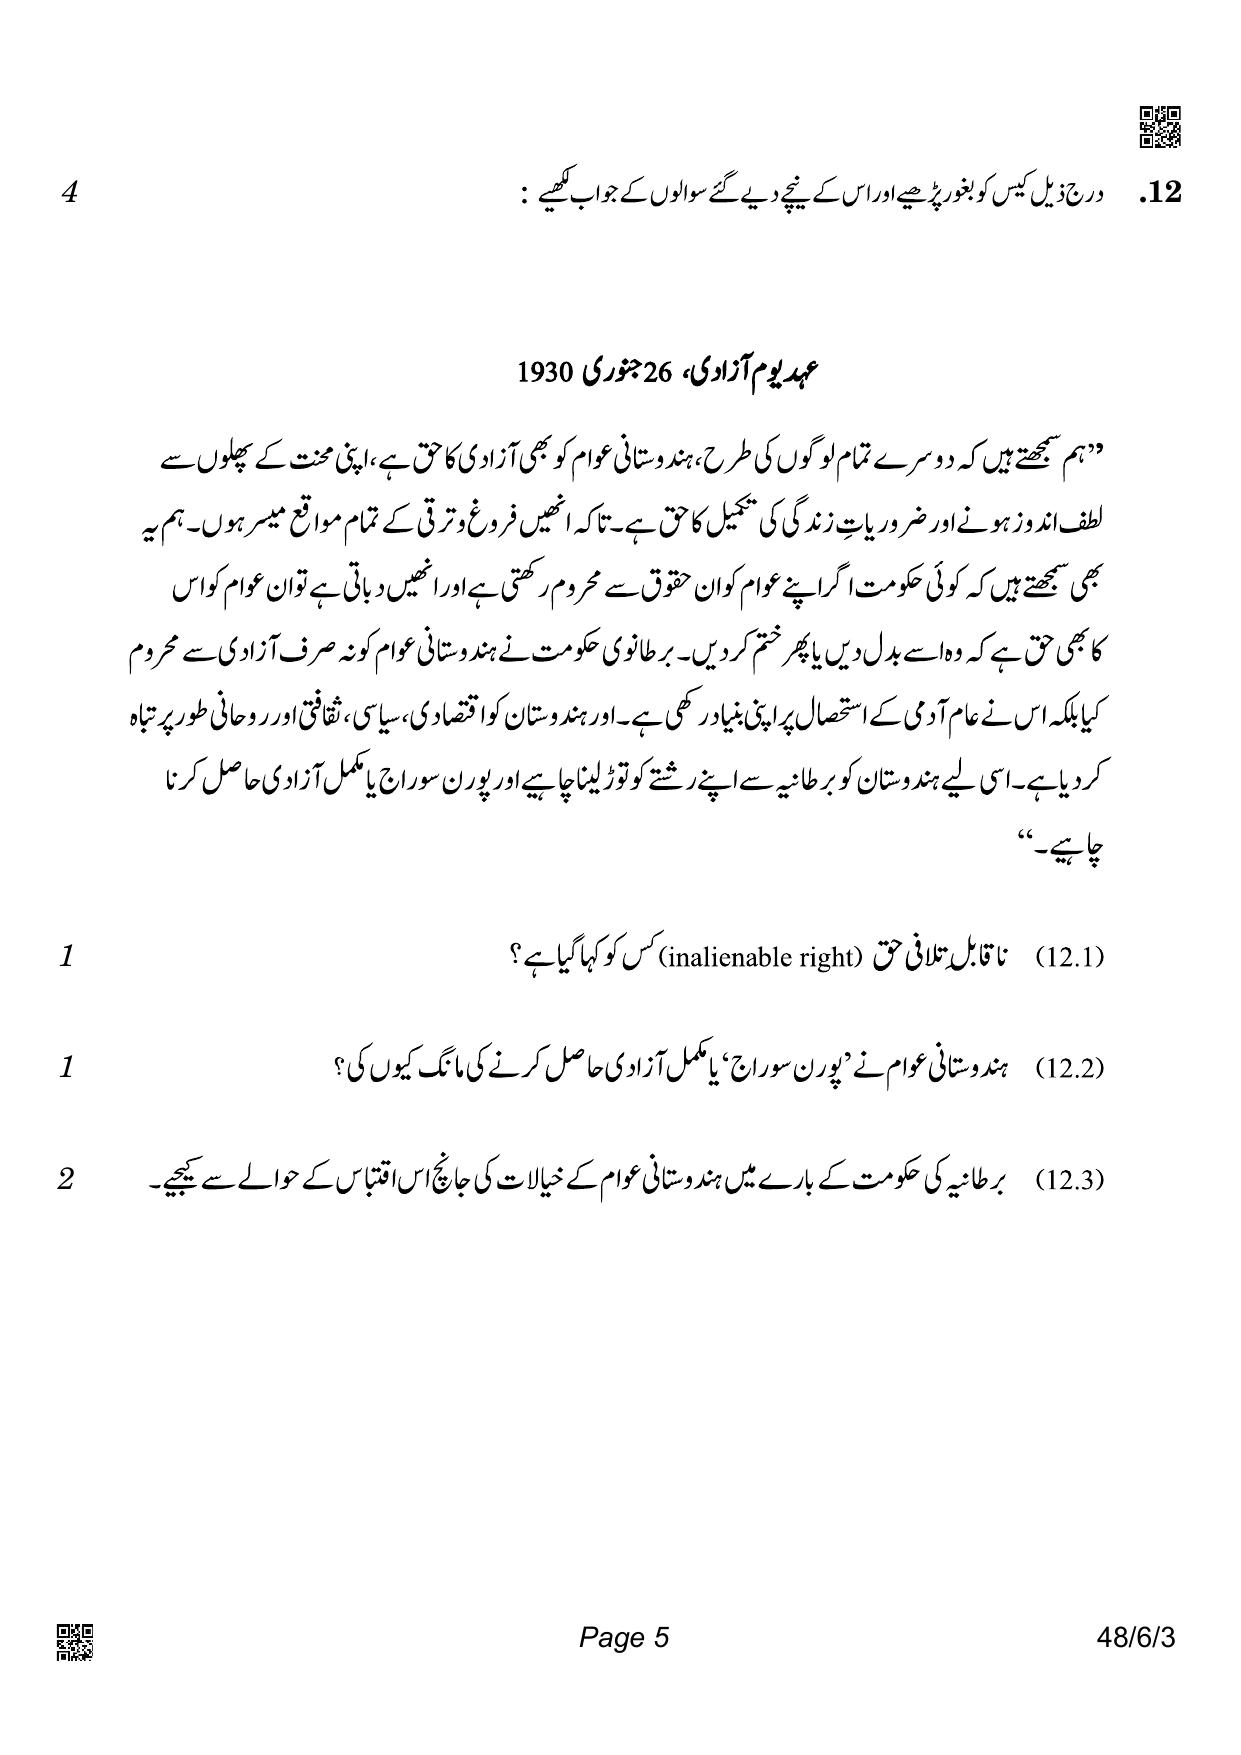 CBSE Class 10 48-6-3_Social Science Urdu Version 2022 Compartment Question Paper - Page 5